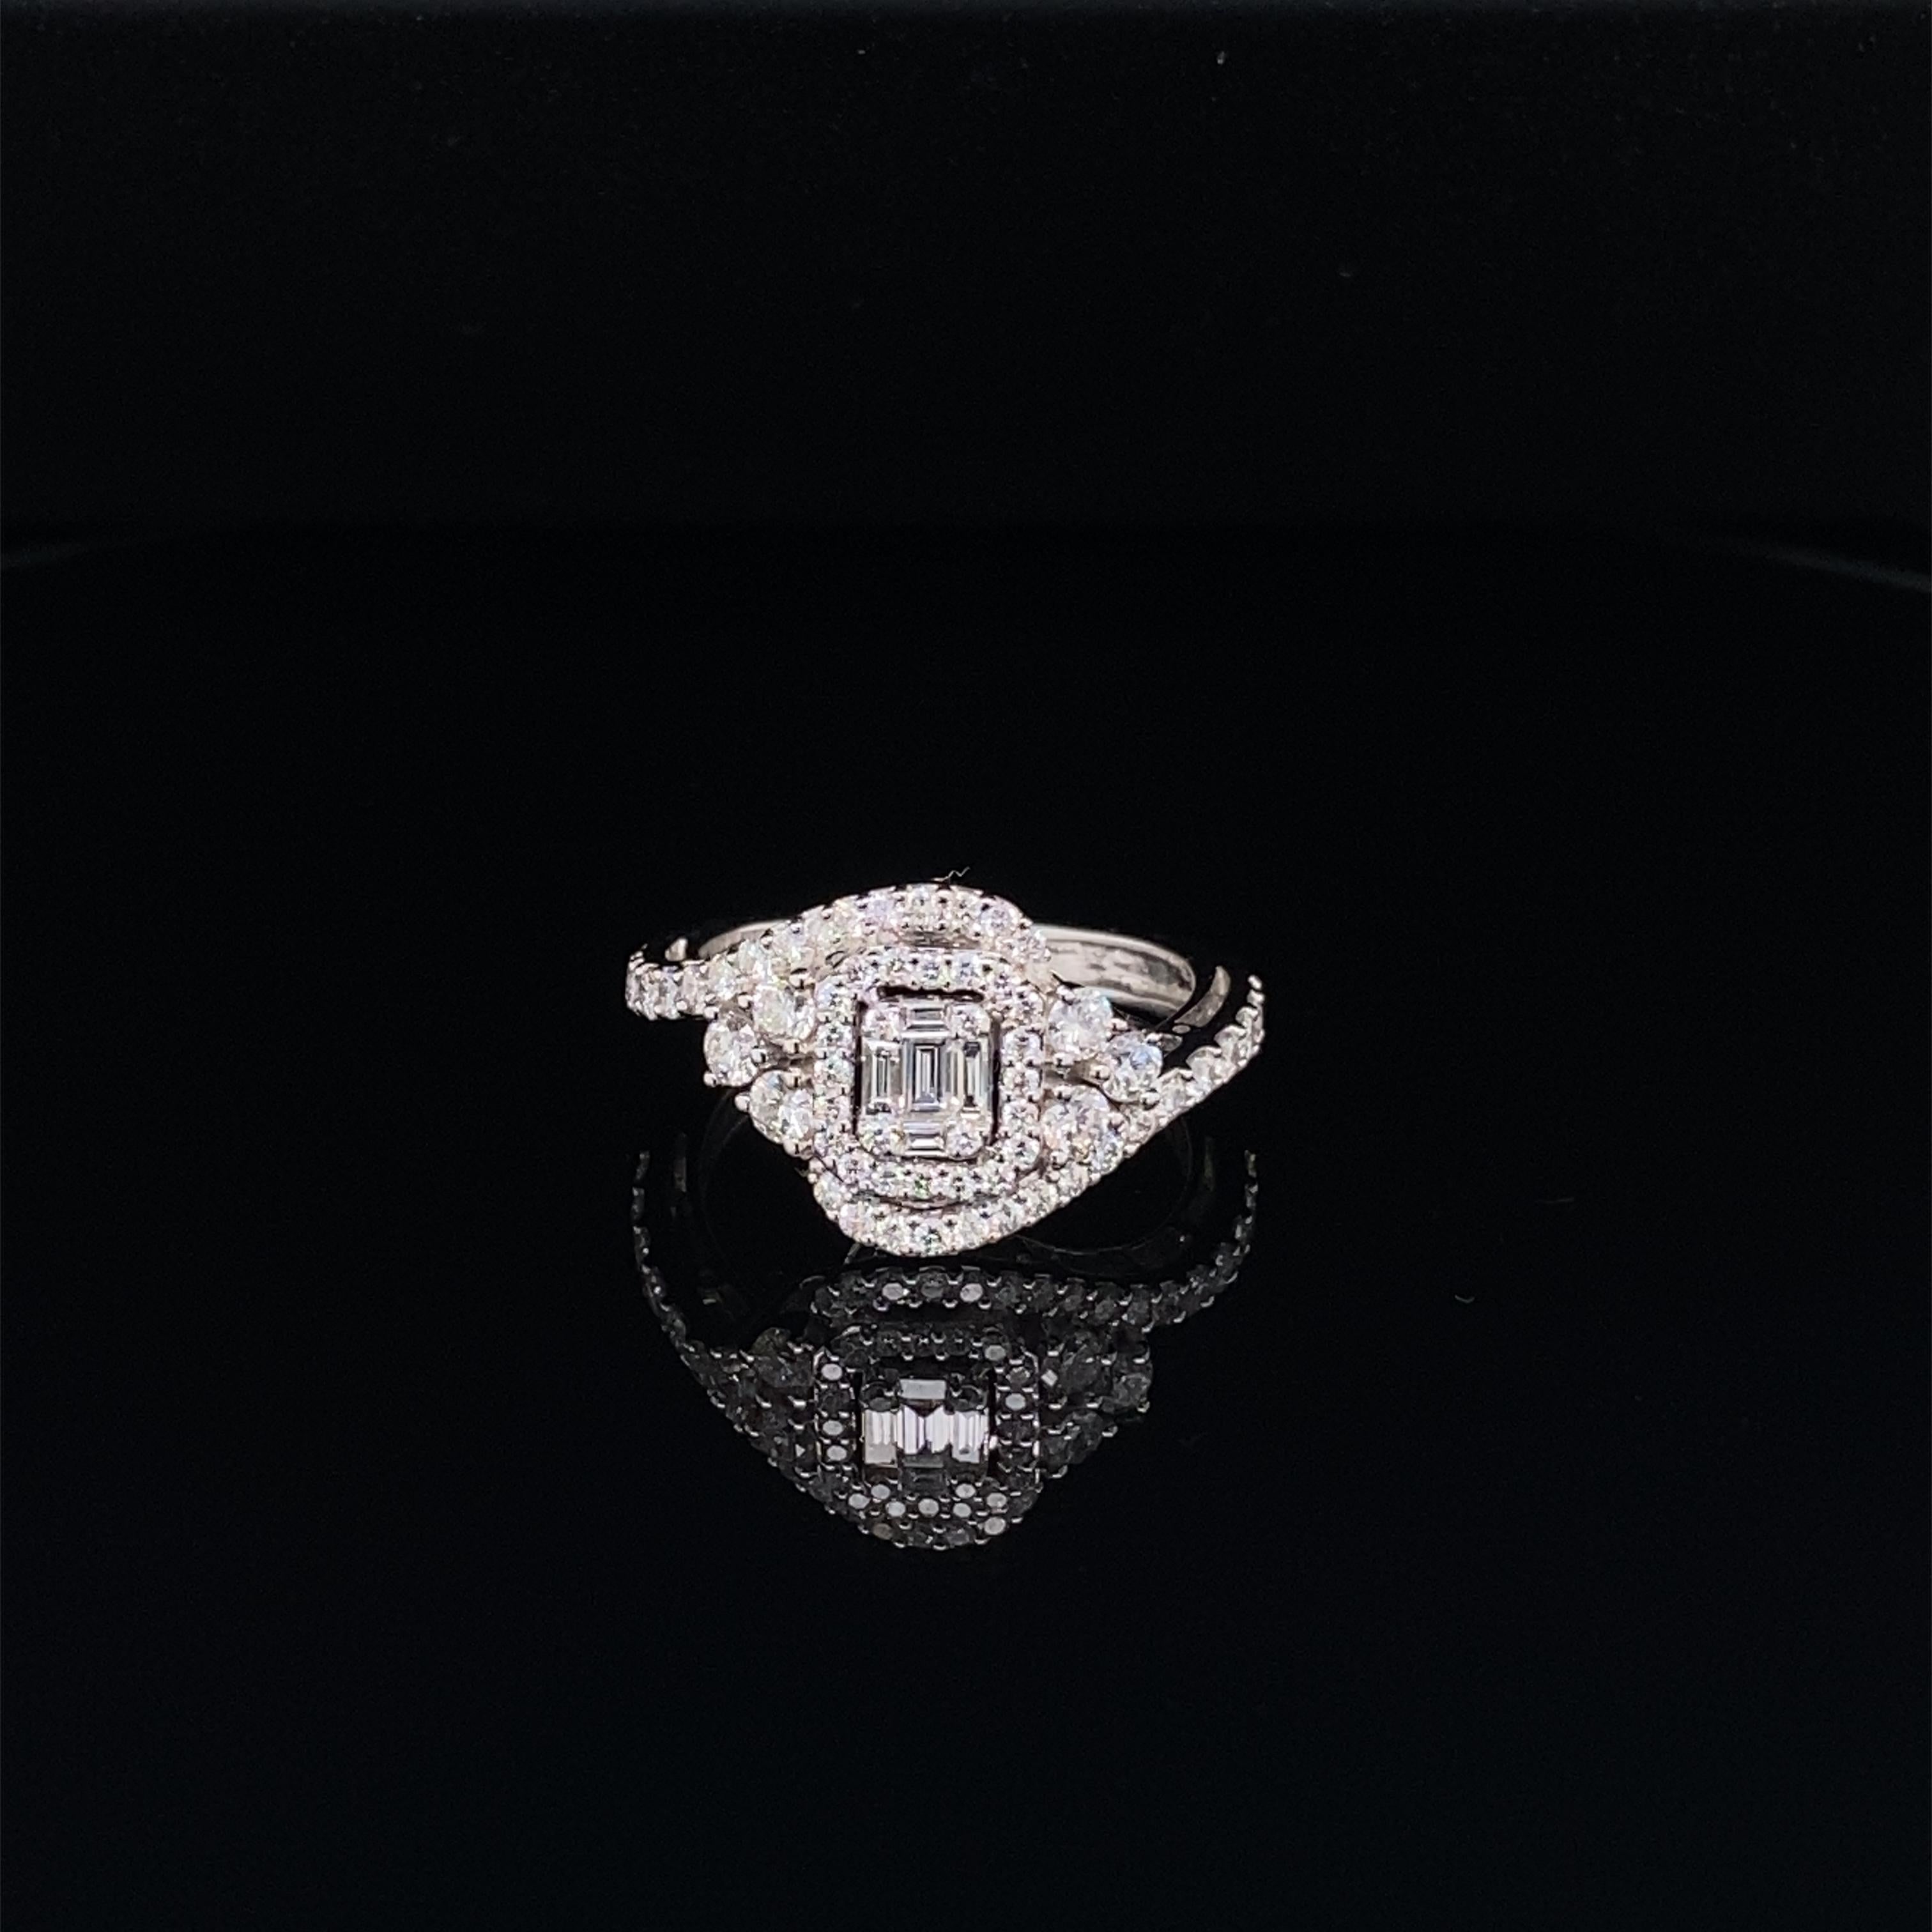 Cette superbe bague présente une magnifique grappe de diamants blancs de taille émeraude, composée de diamants baguettes et ronds, entourée d'une mer de diamants. La grappe de diamants est posée sur une tige en diamant. Cette bague est sertie d'or